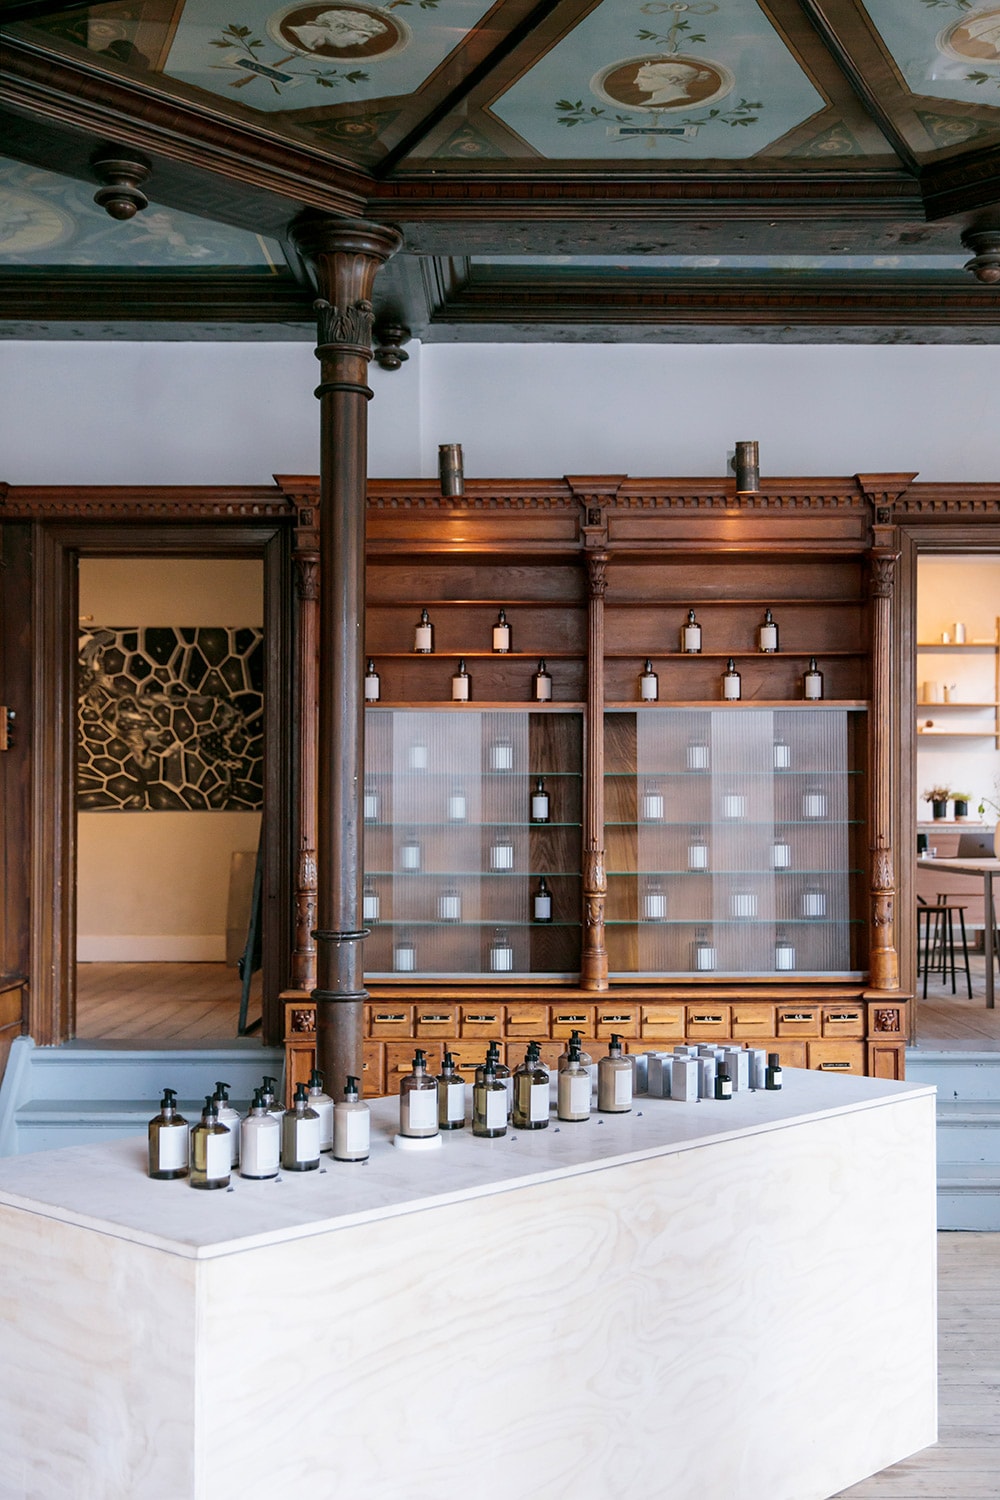 クラシックな薬棚の前には、アポセカリーシリーズが並ぶテーブル。美しい天井画にも注目。